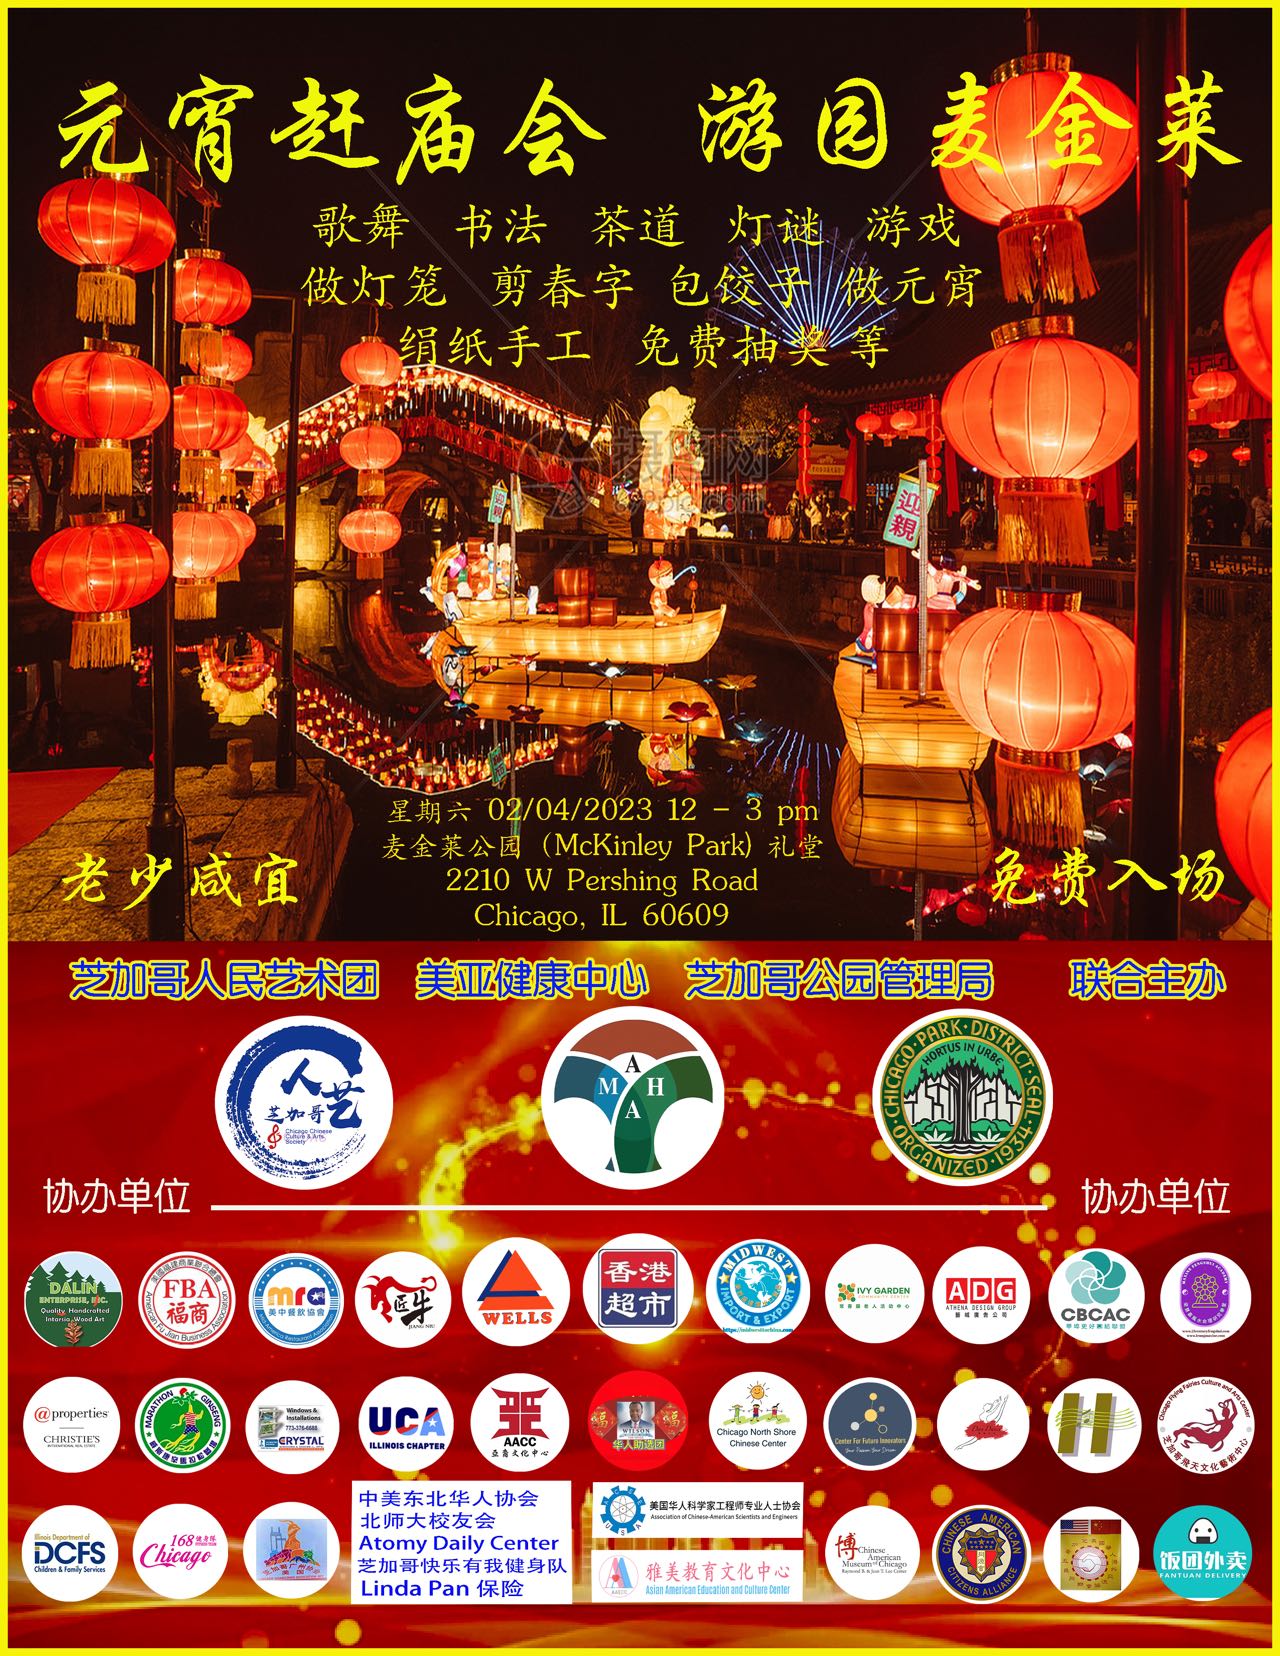 Lantern Festival Bazaar at McKinley Park 2023